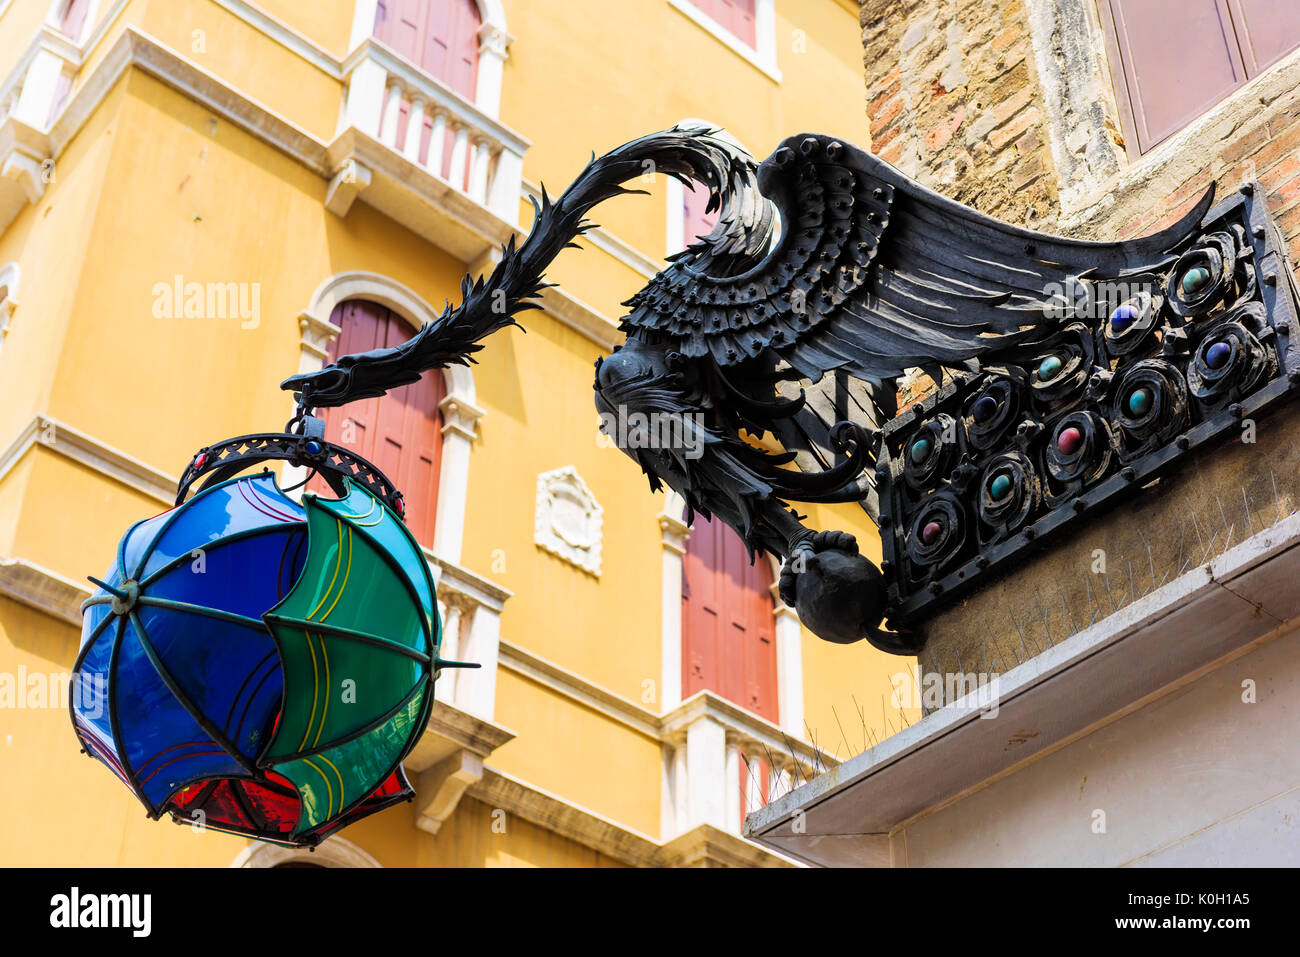 Un insolito lampione avvistato a Venezia. Un drago azienda più ombrelloni. Foto Stock